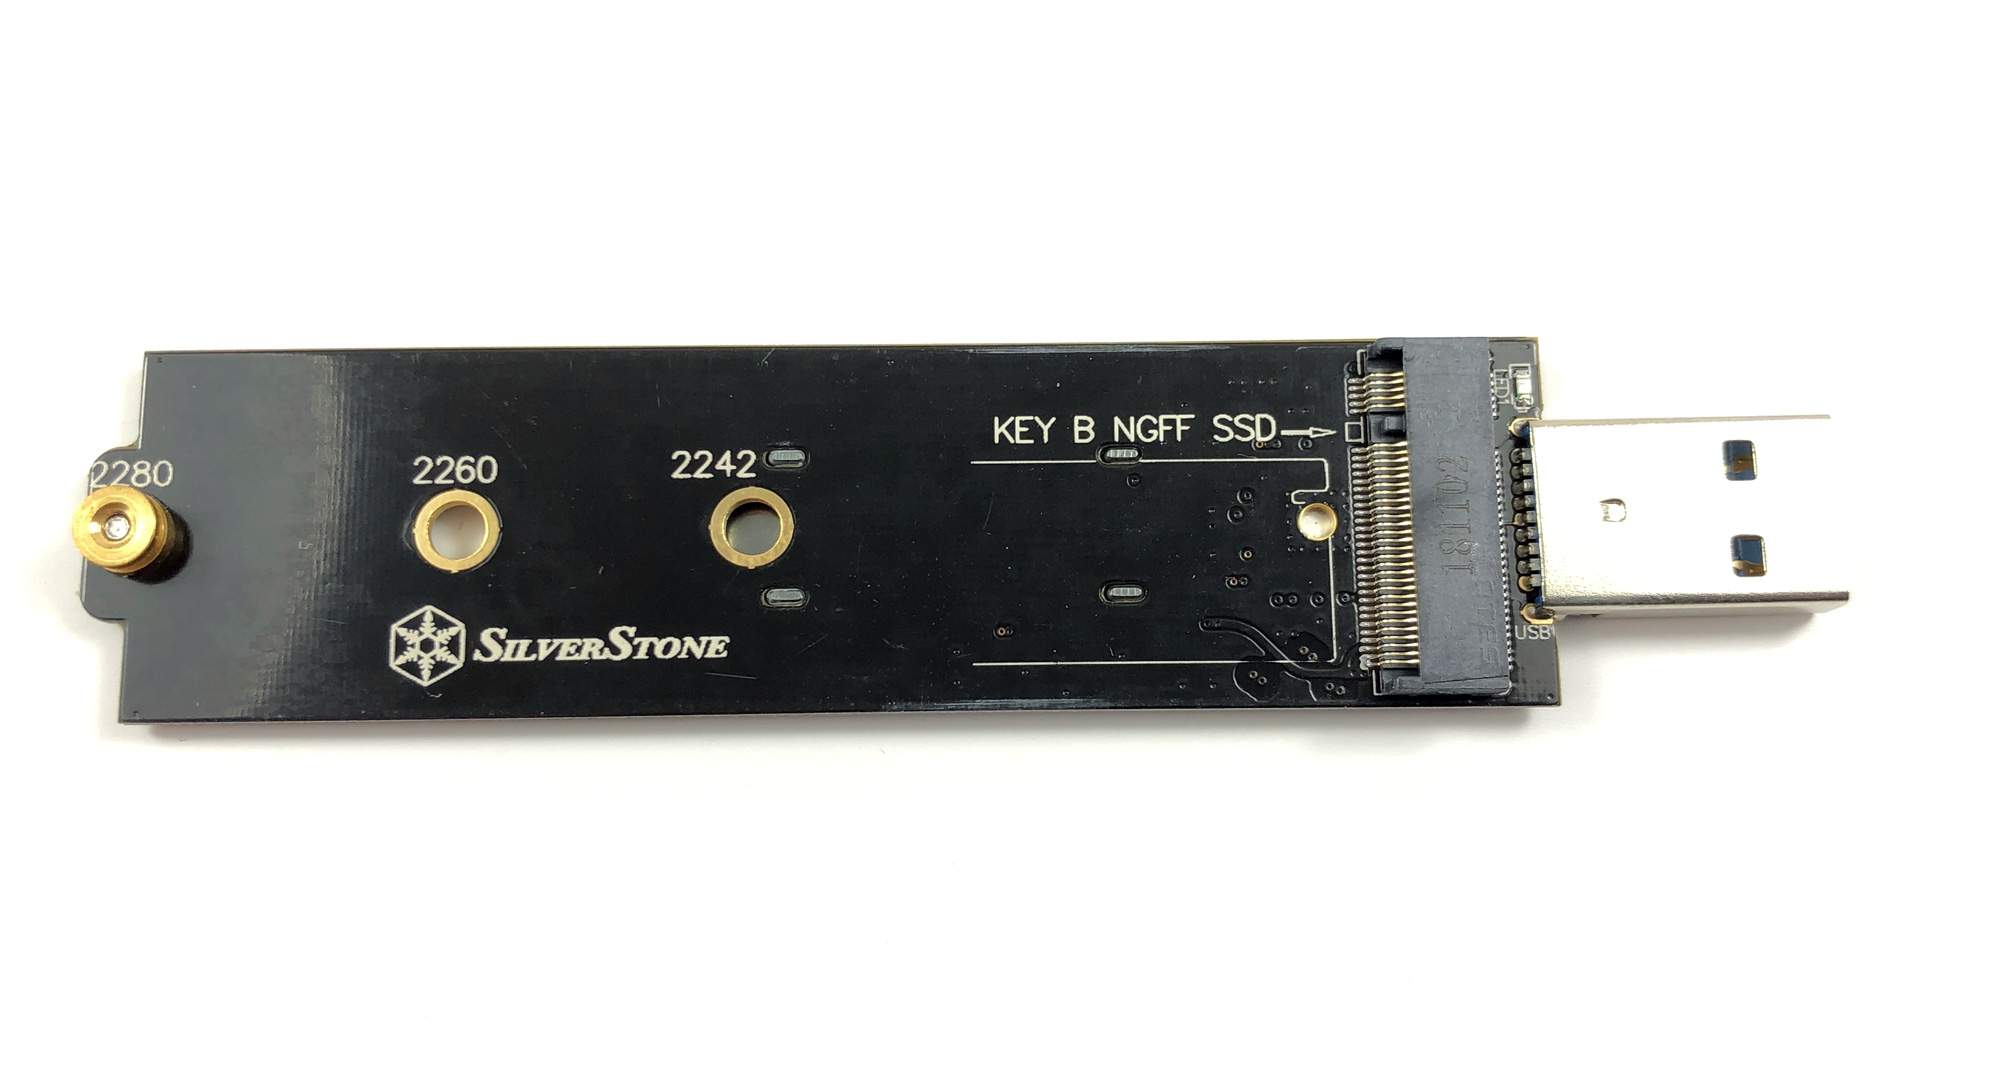 Schneller USB 3.1 Stick mit M.2 SSD